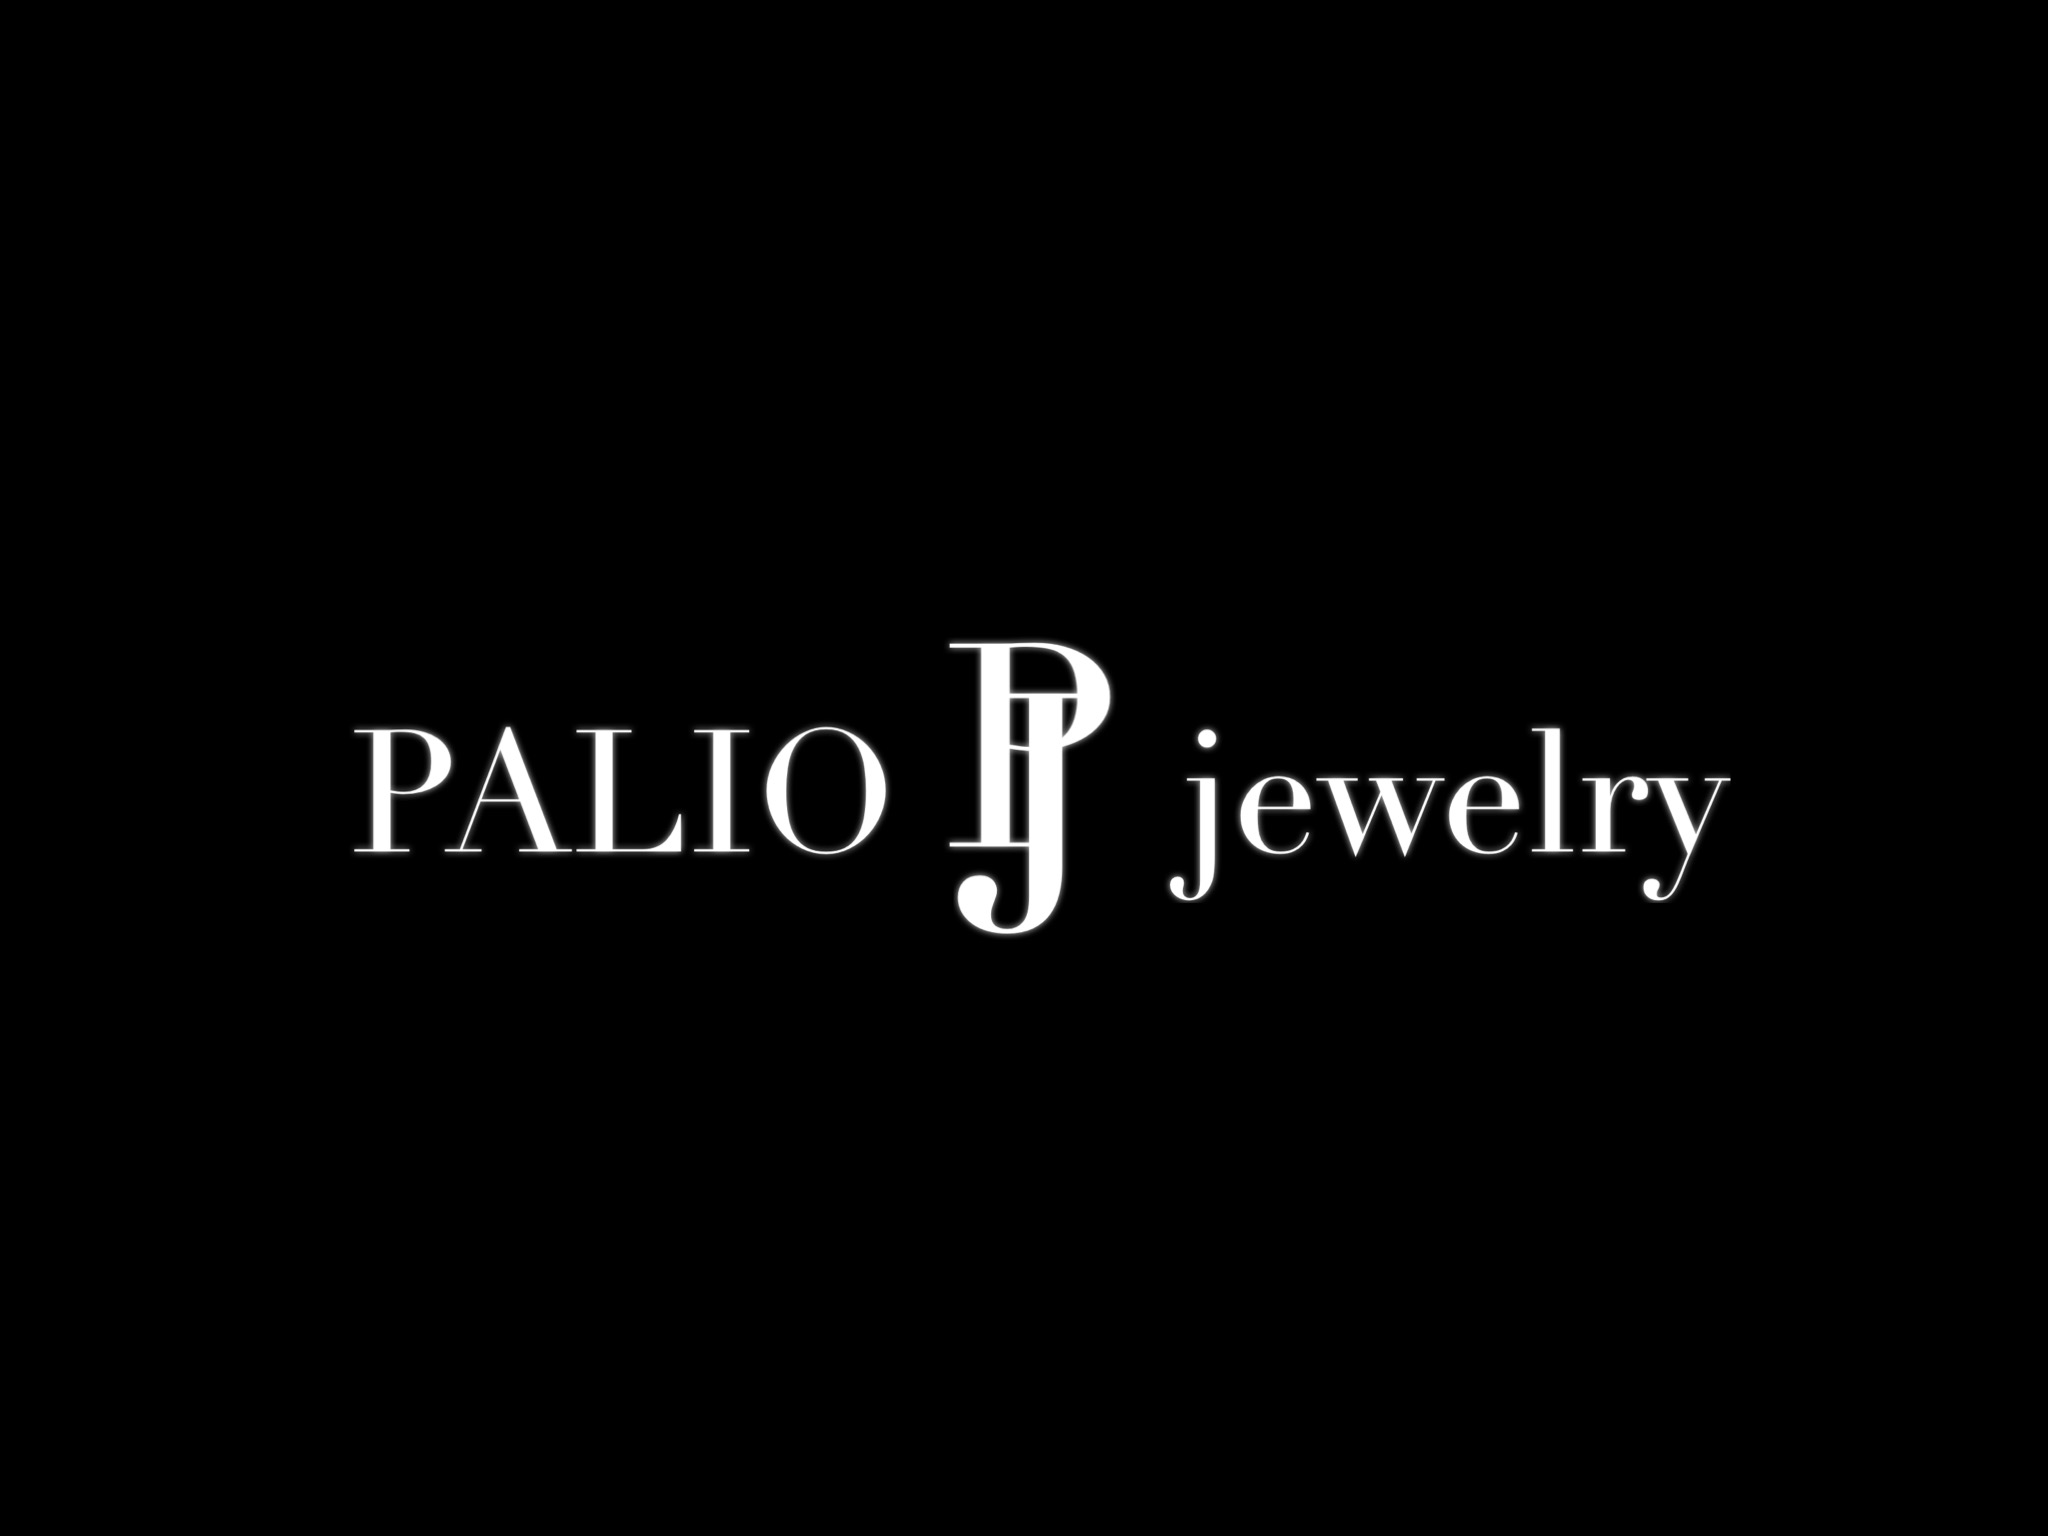 PALIO jewelry